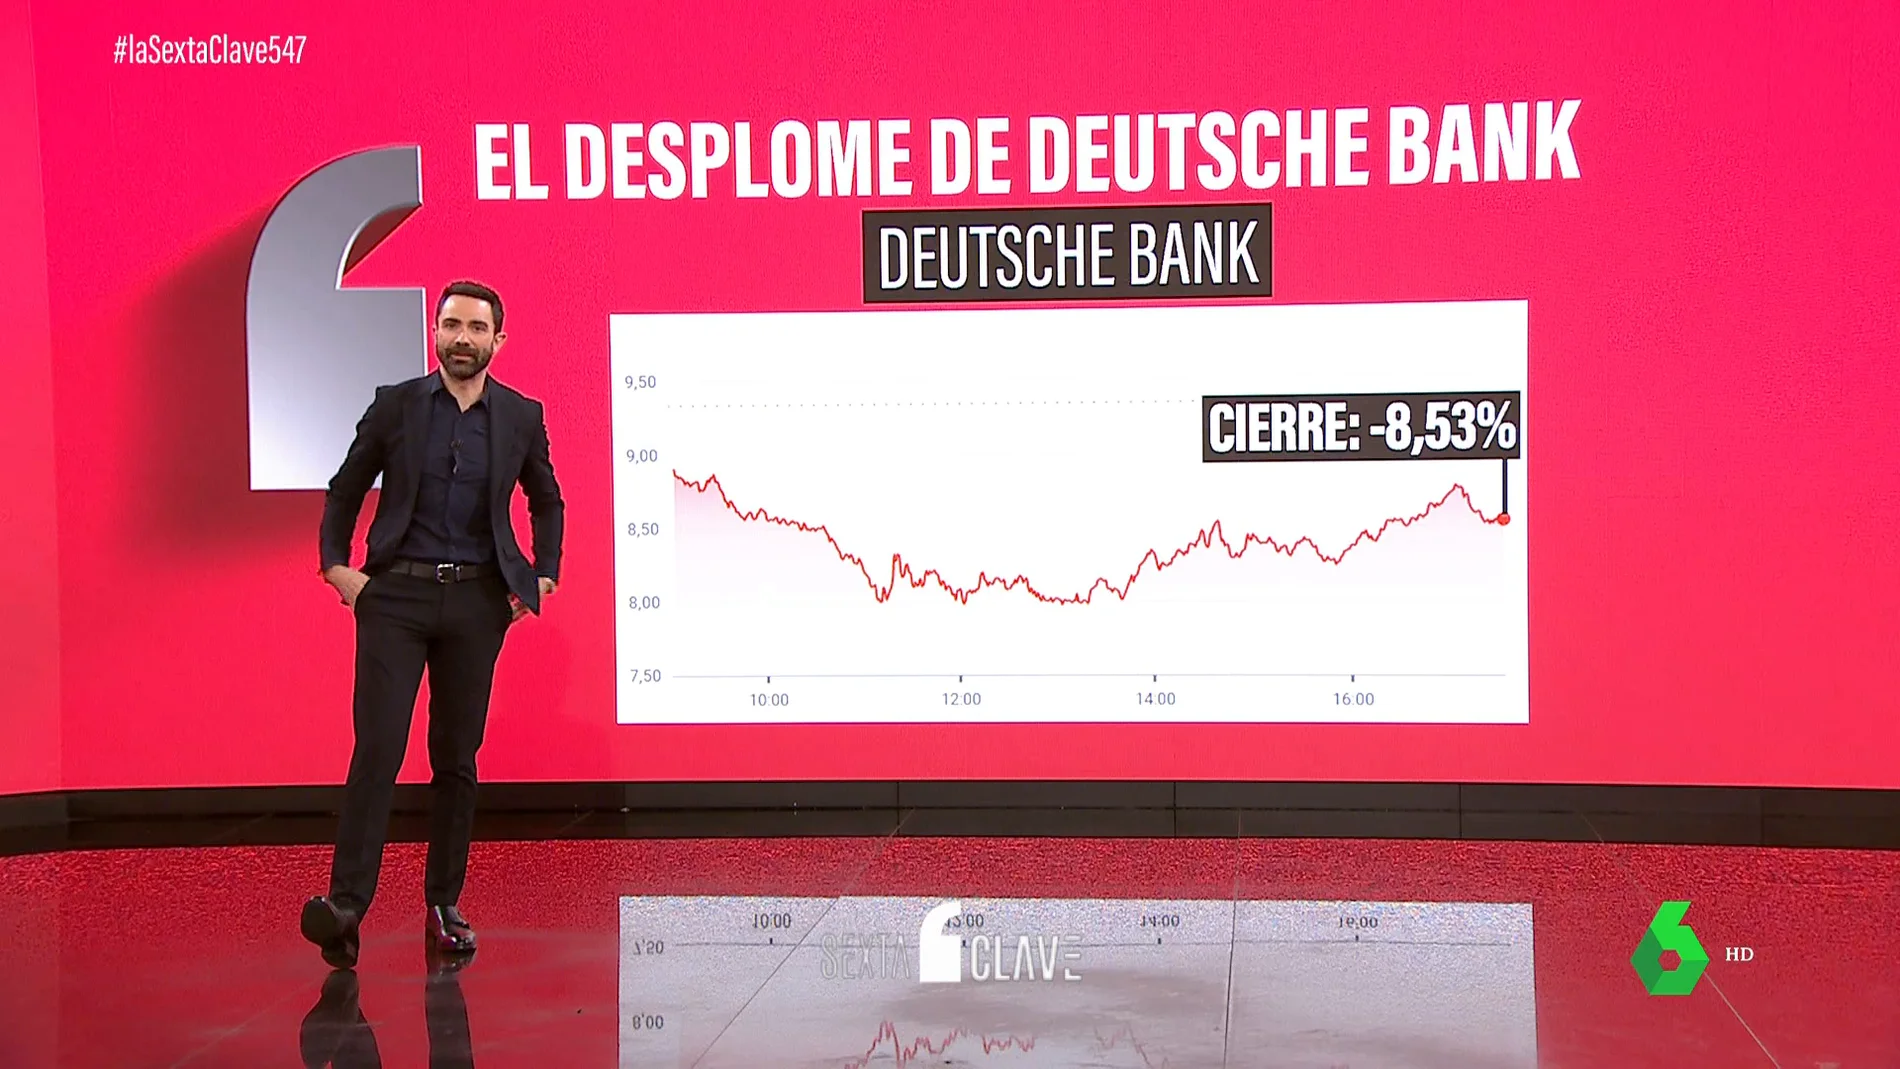 Viernes negro en la banca española: el IBEX 35 se tiñe de rojo por el desplome del Deutsche Bank